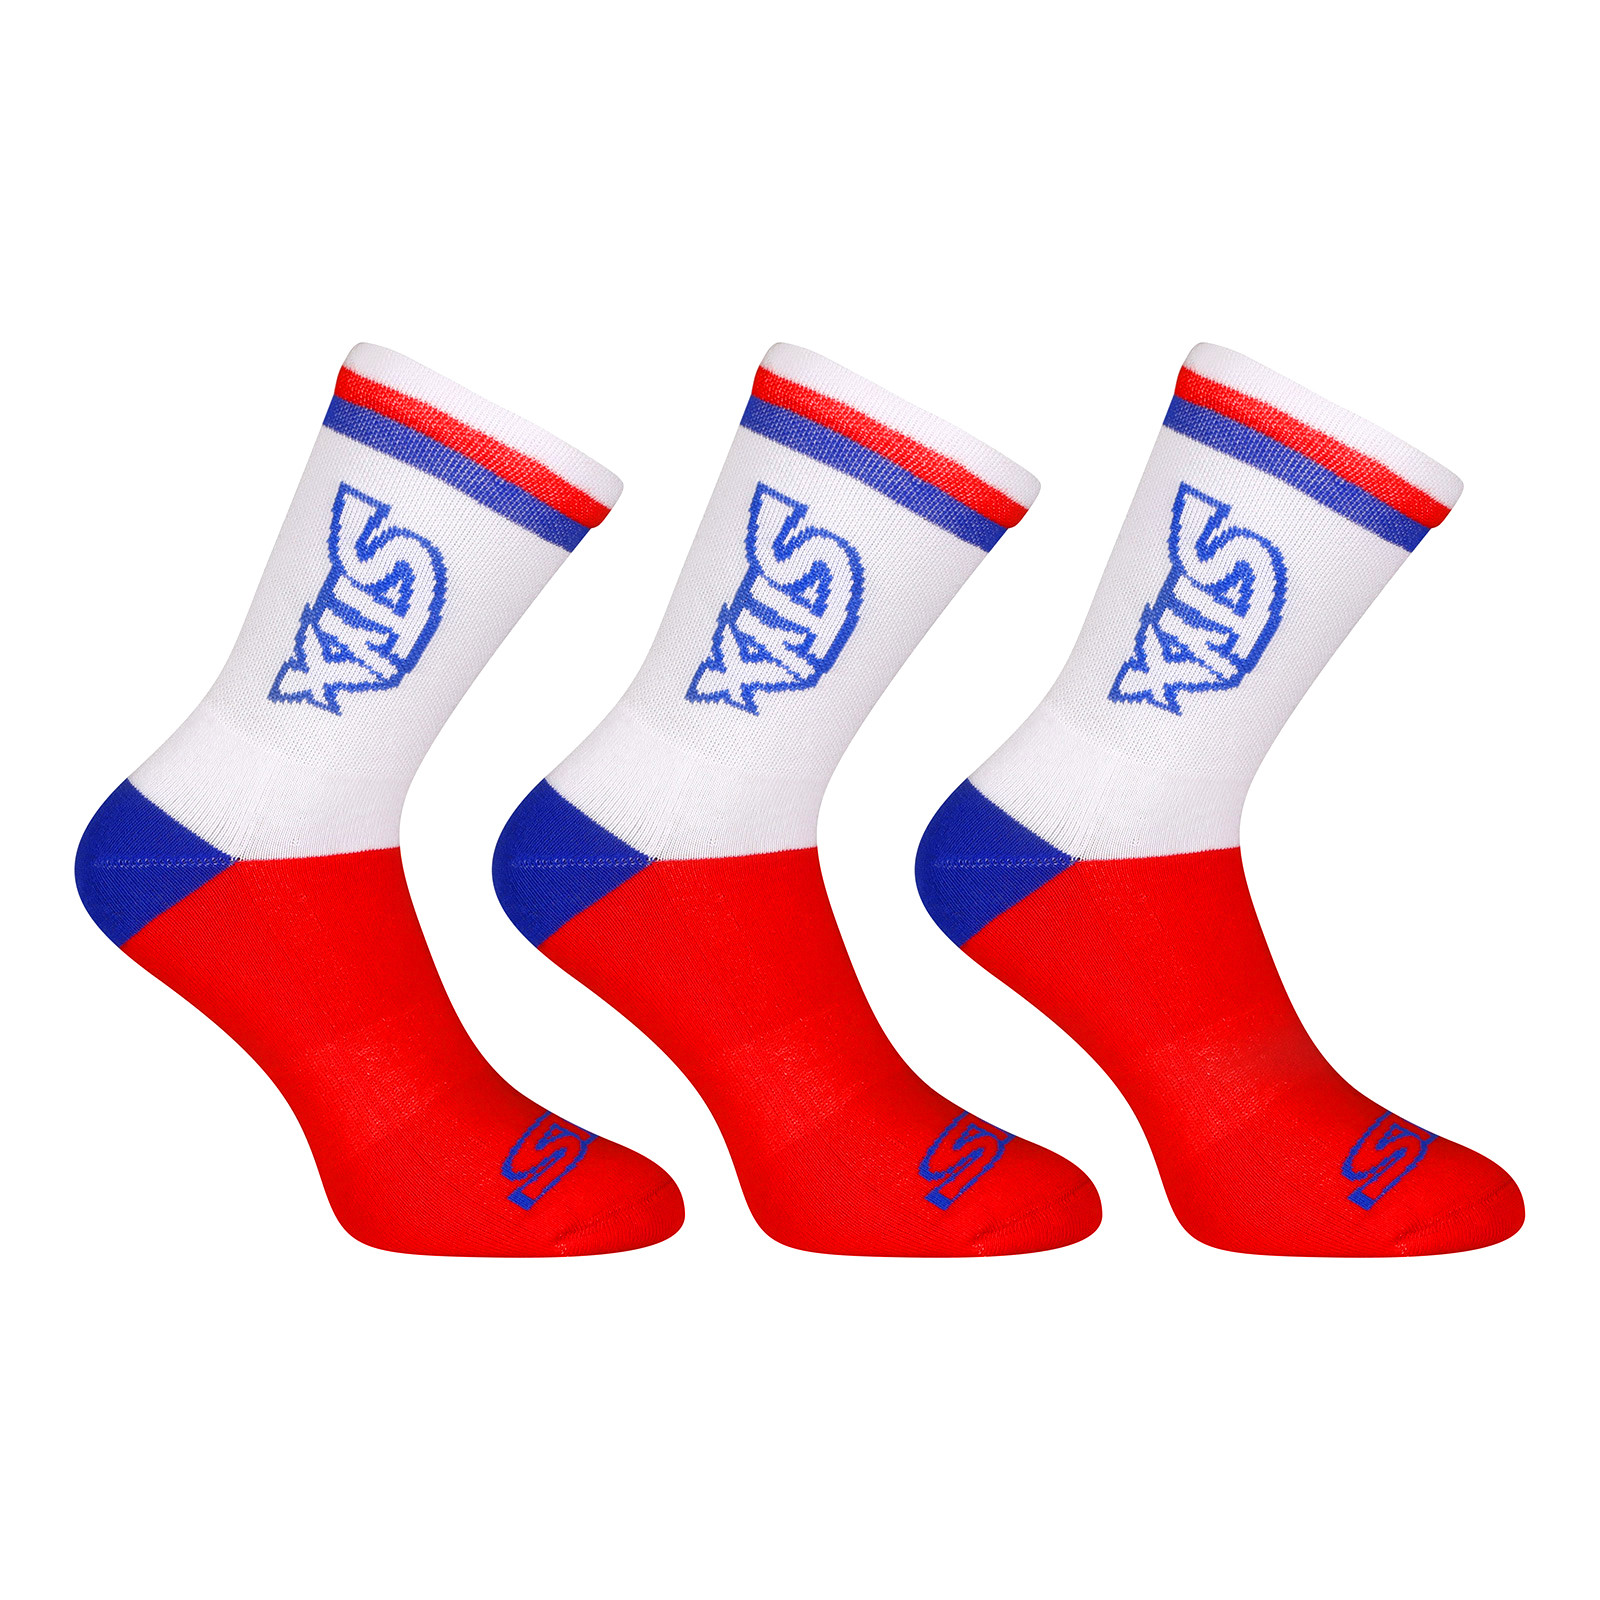 3PACK ponožky Styx vysoké červené trikolóra (3HV10444) XL.
Vysoké ponožky Styx nejen pro sportovní příležitosti
Tahle barevná kombinace je to pravé pro nejen pro fanoušky českých sportovců.
Spodní prádlo Styx patří k těm nejoblíbenějším
Pánské boxerky a trenýrky Styx patří k našim nejprodávanějším produktům – a stejně jsou na tom i ponožky Styx.